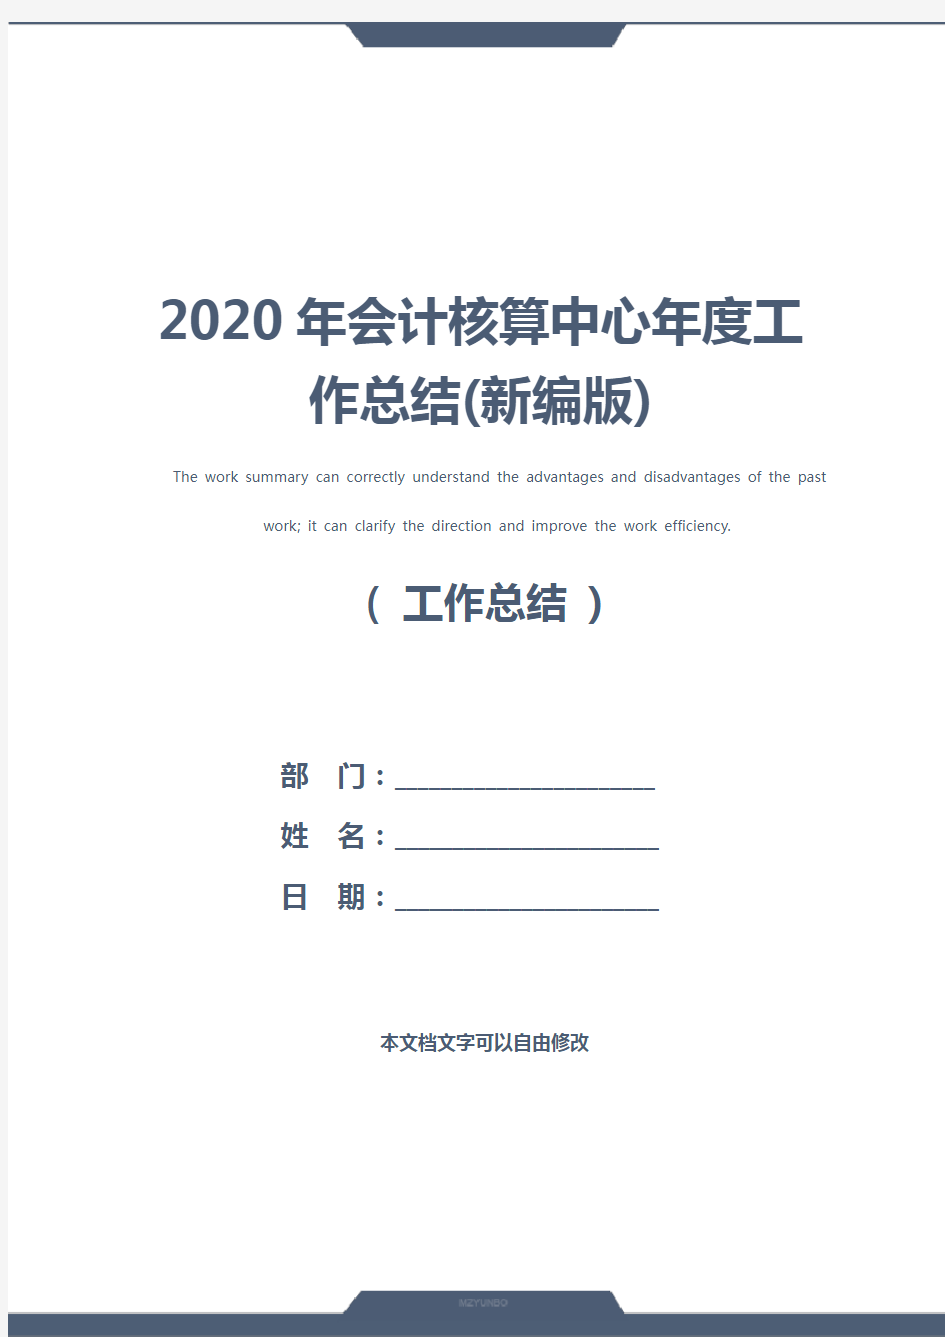 2020年会计核算中心年度工作总结(新编版)